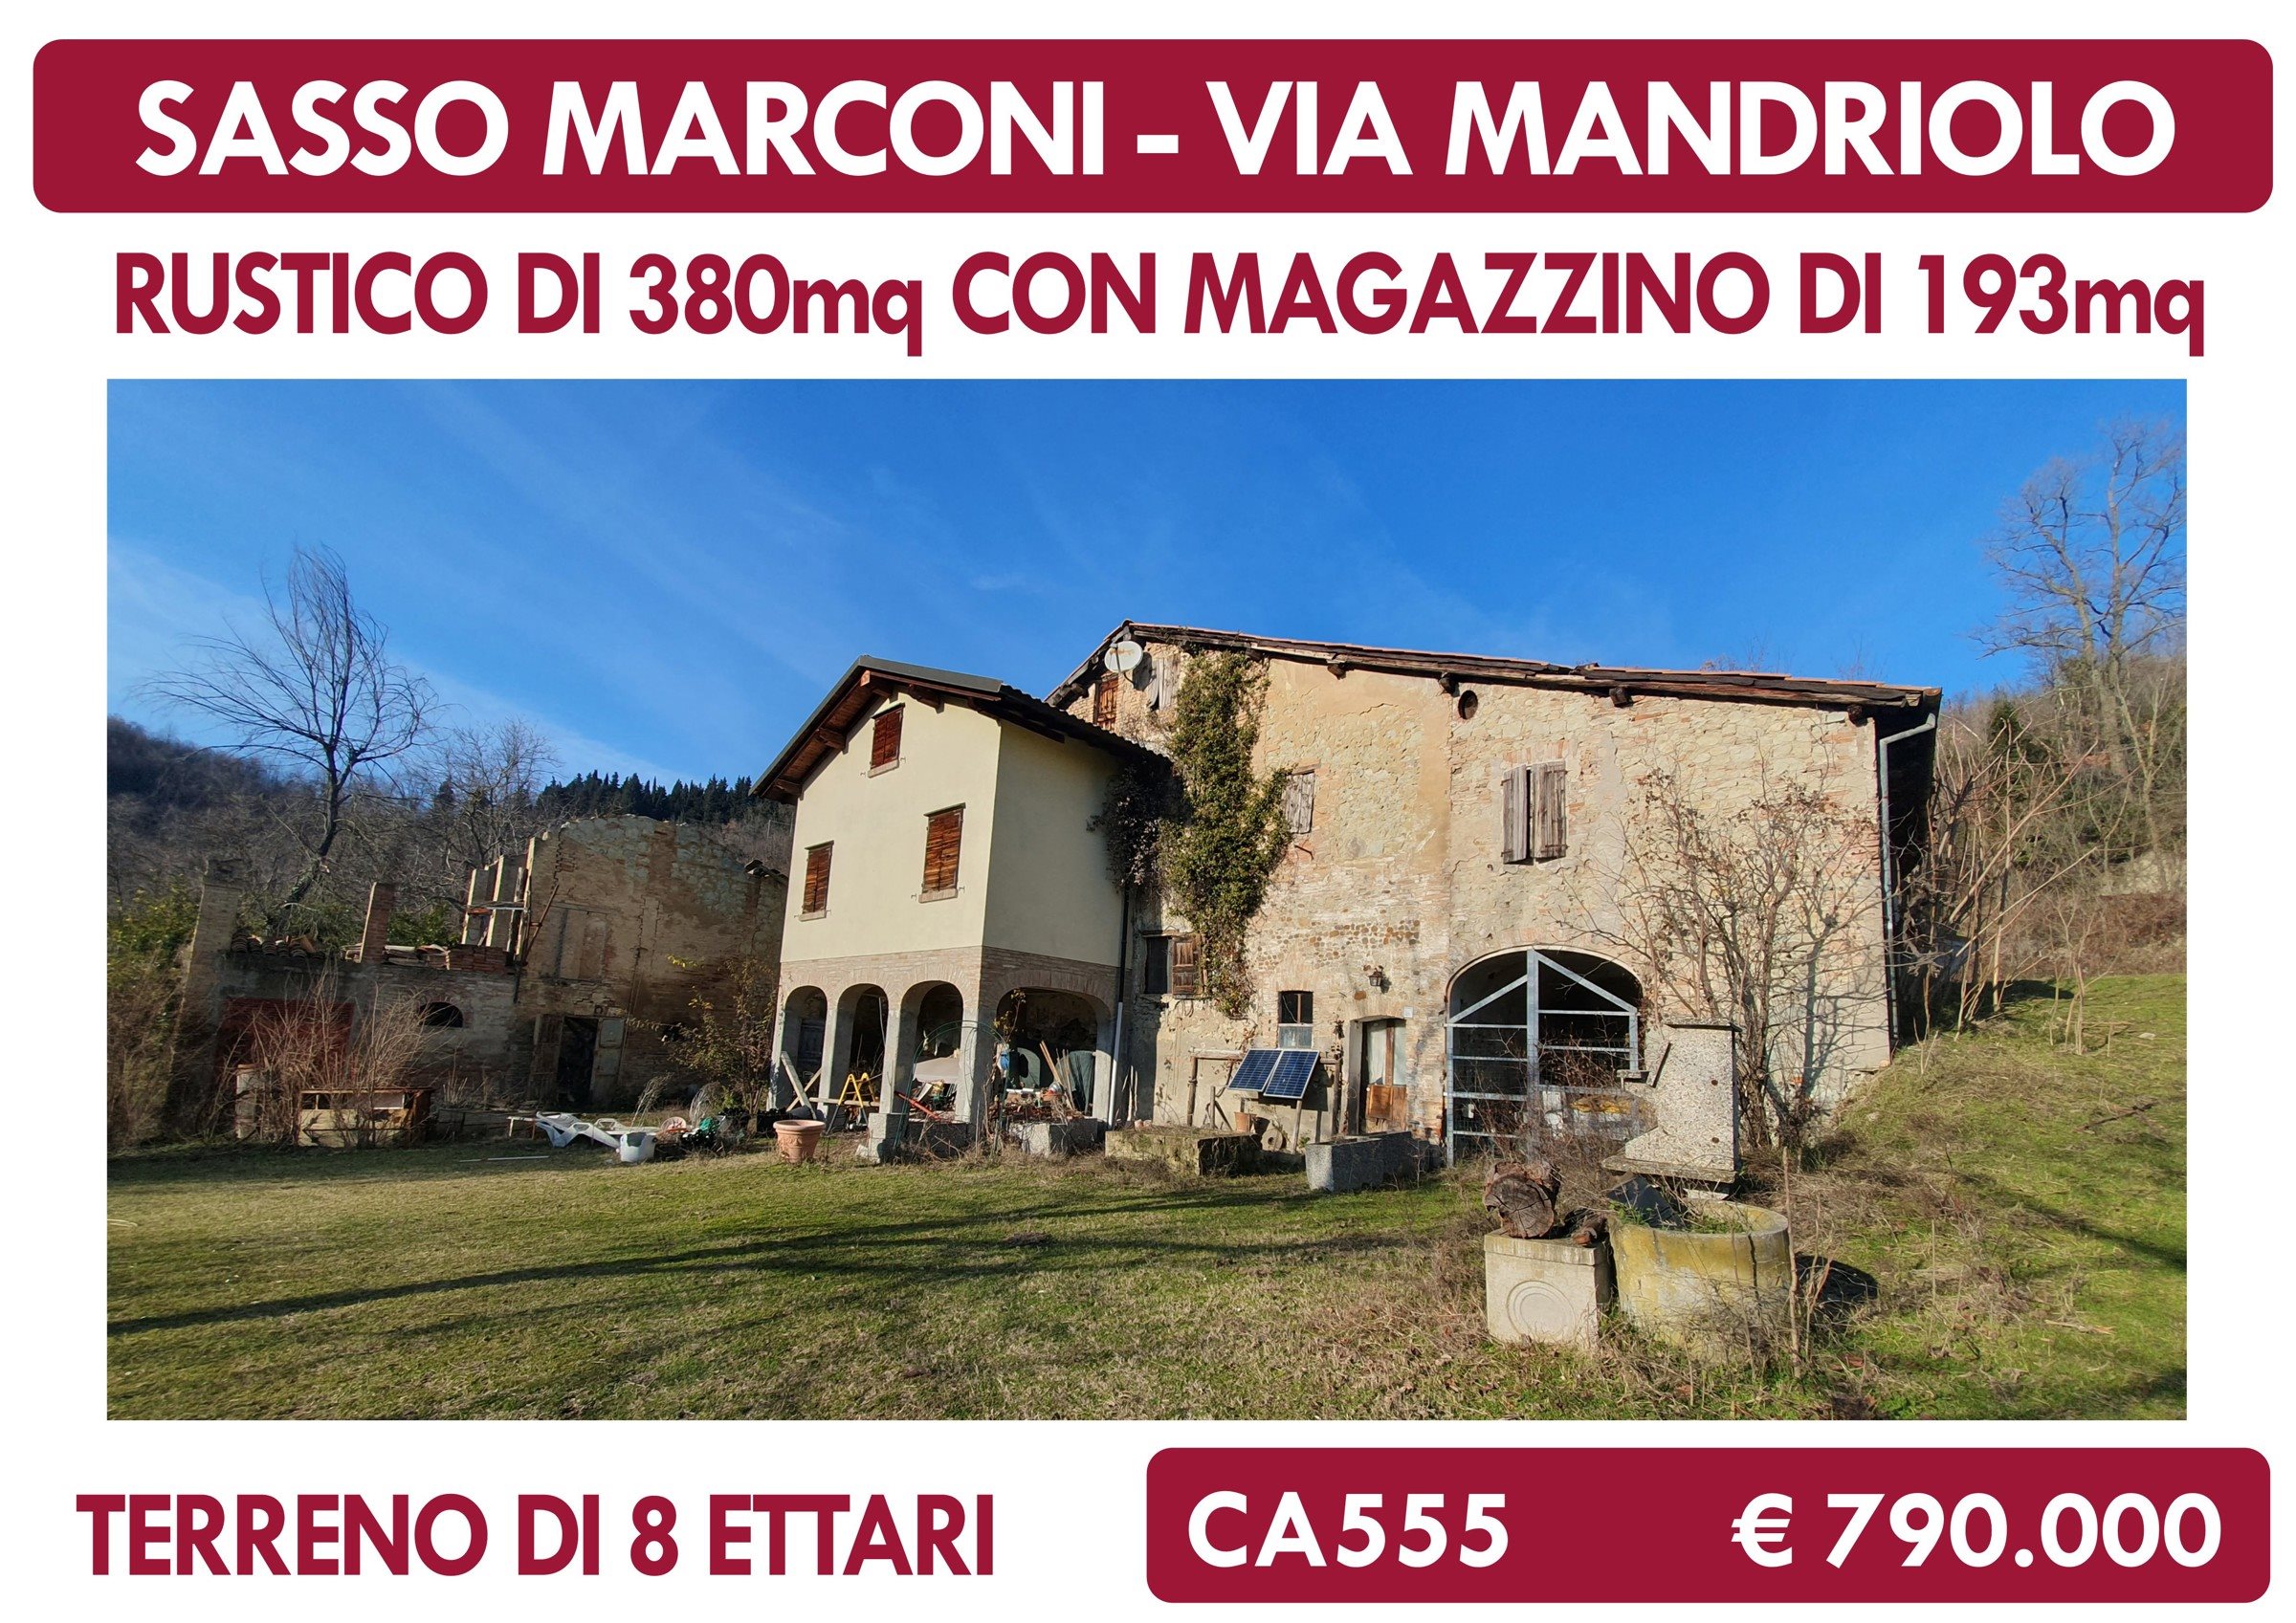 Rustico in Via Mandriolo, Sasso Marconi (BO)